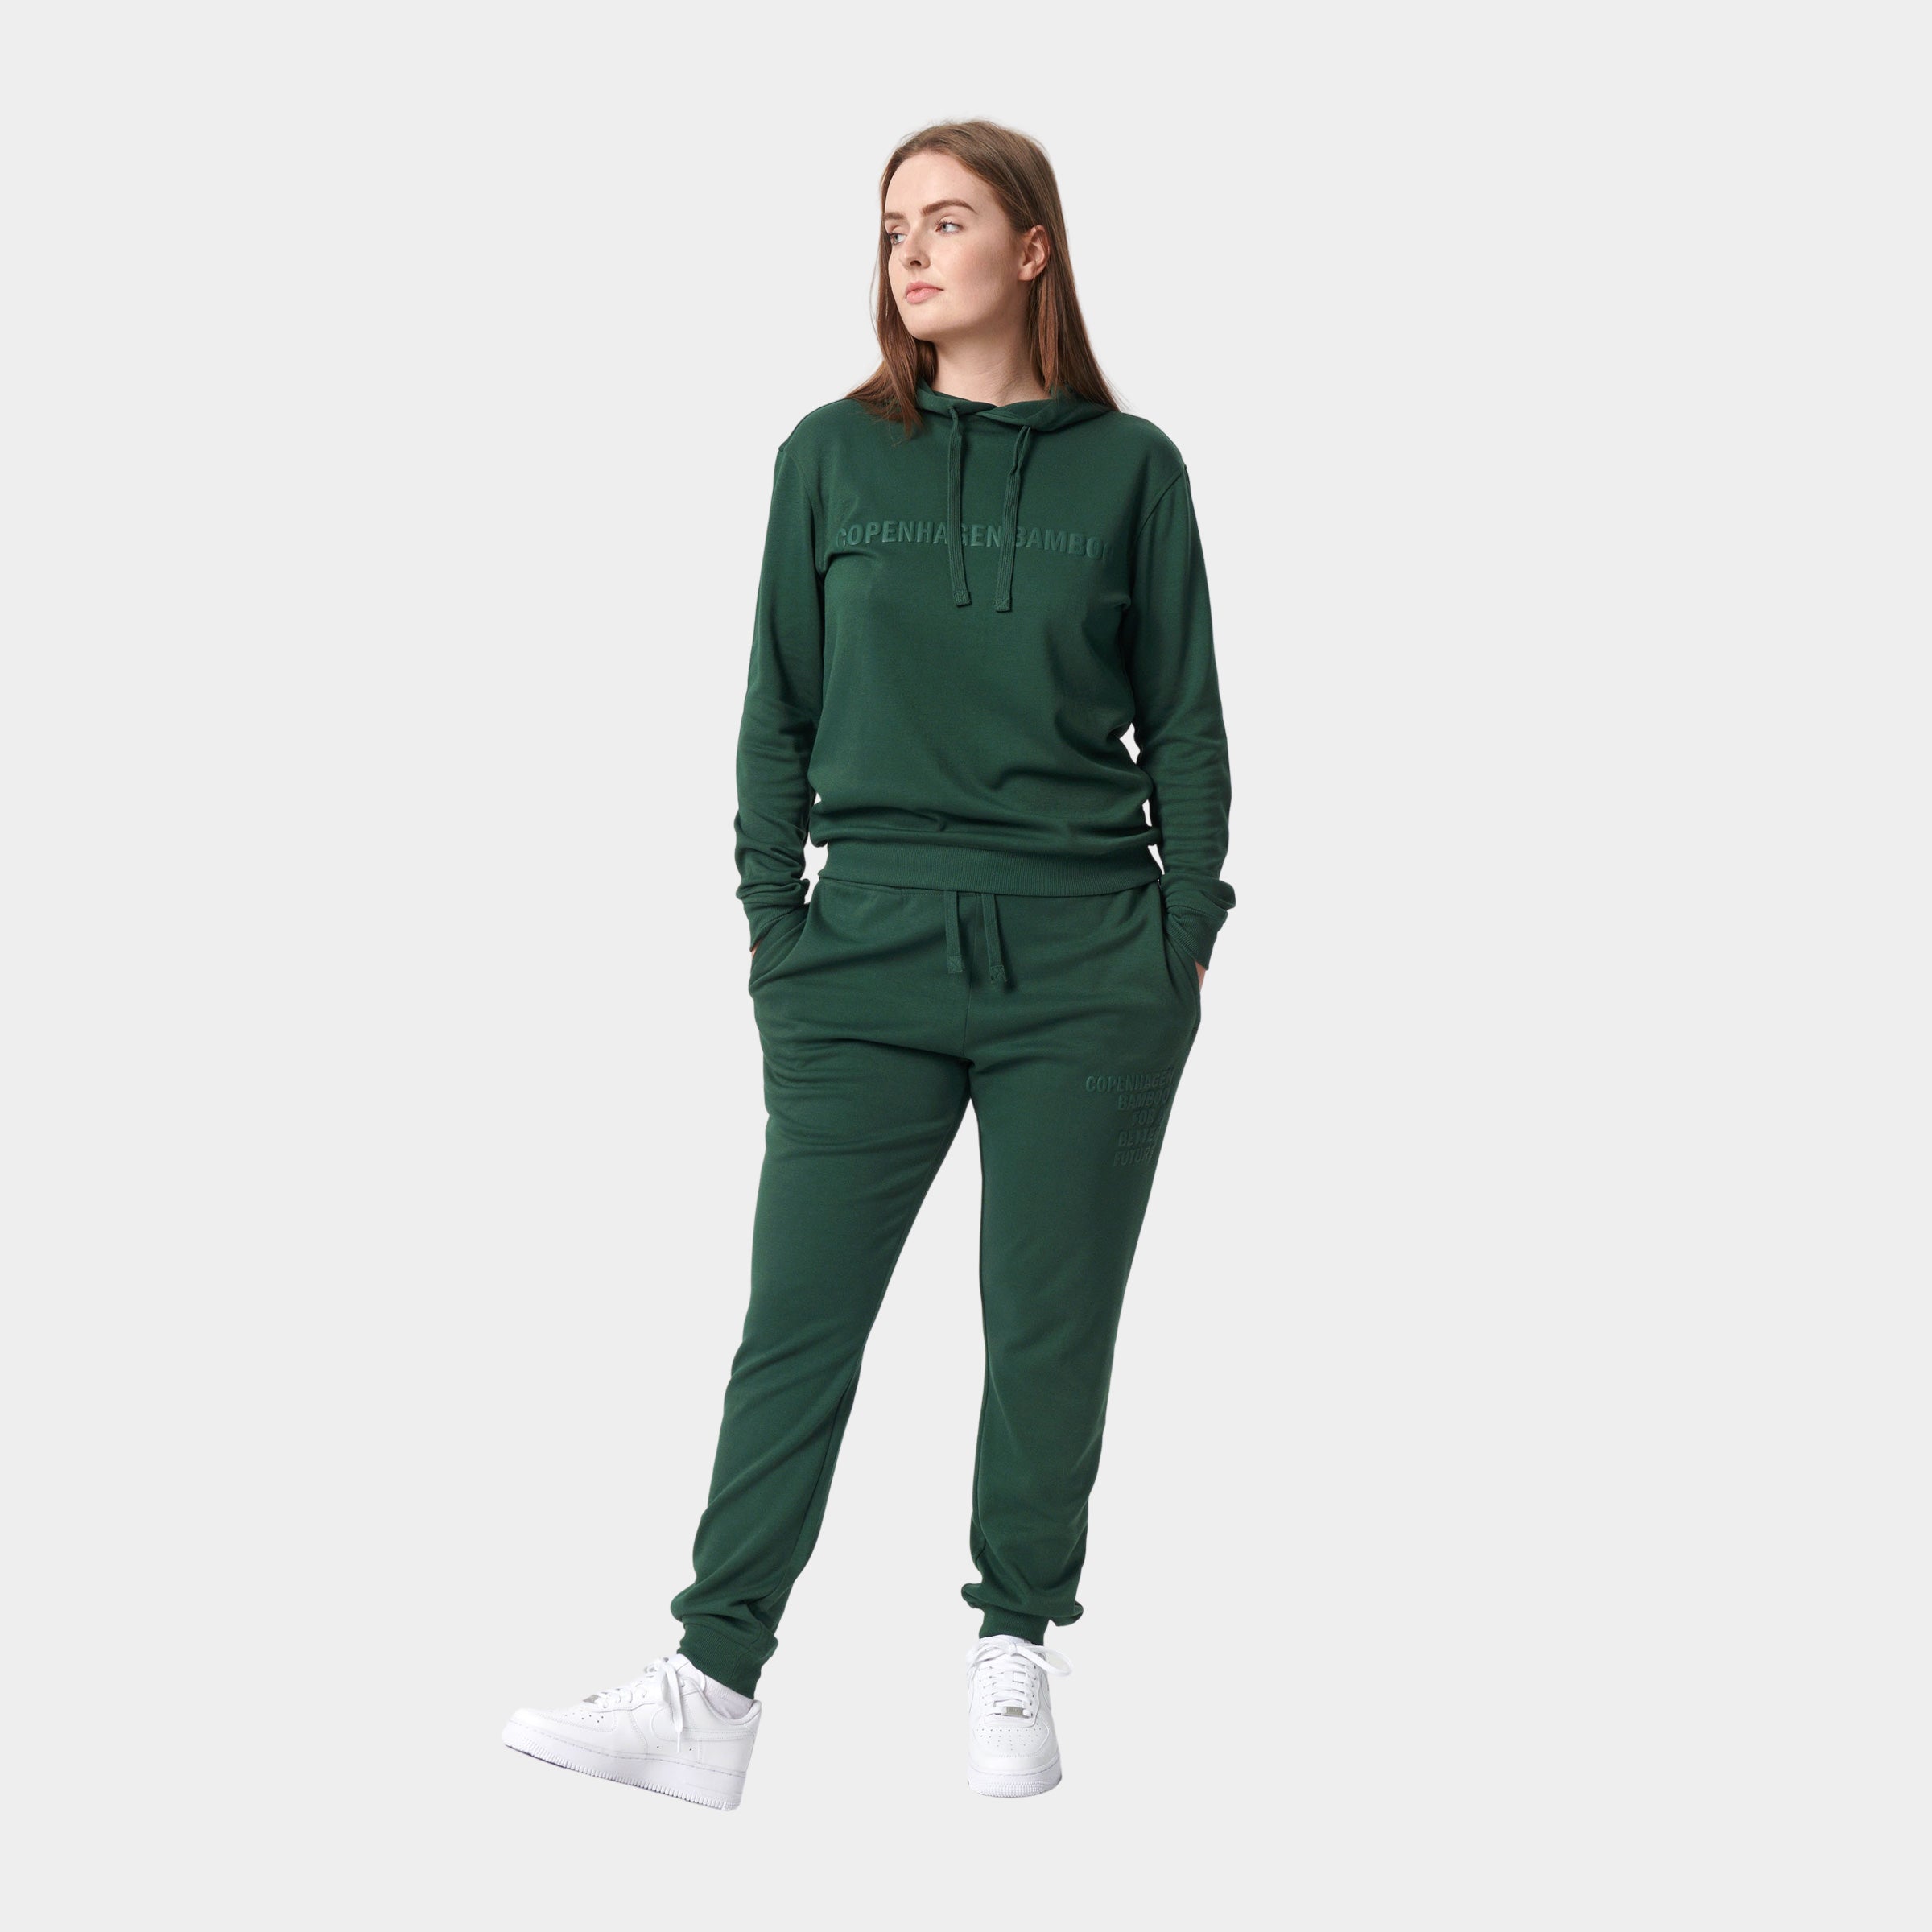 Billede af Bambus hoodie joggingsæt i grøn med logo til damer fra Copenhagen Bamboo, XS